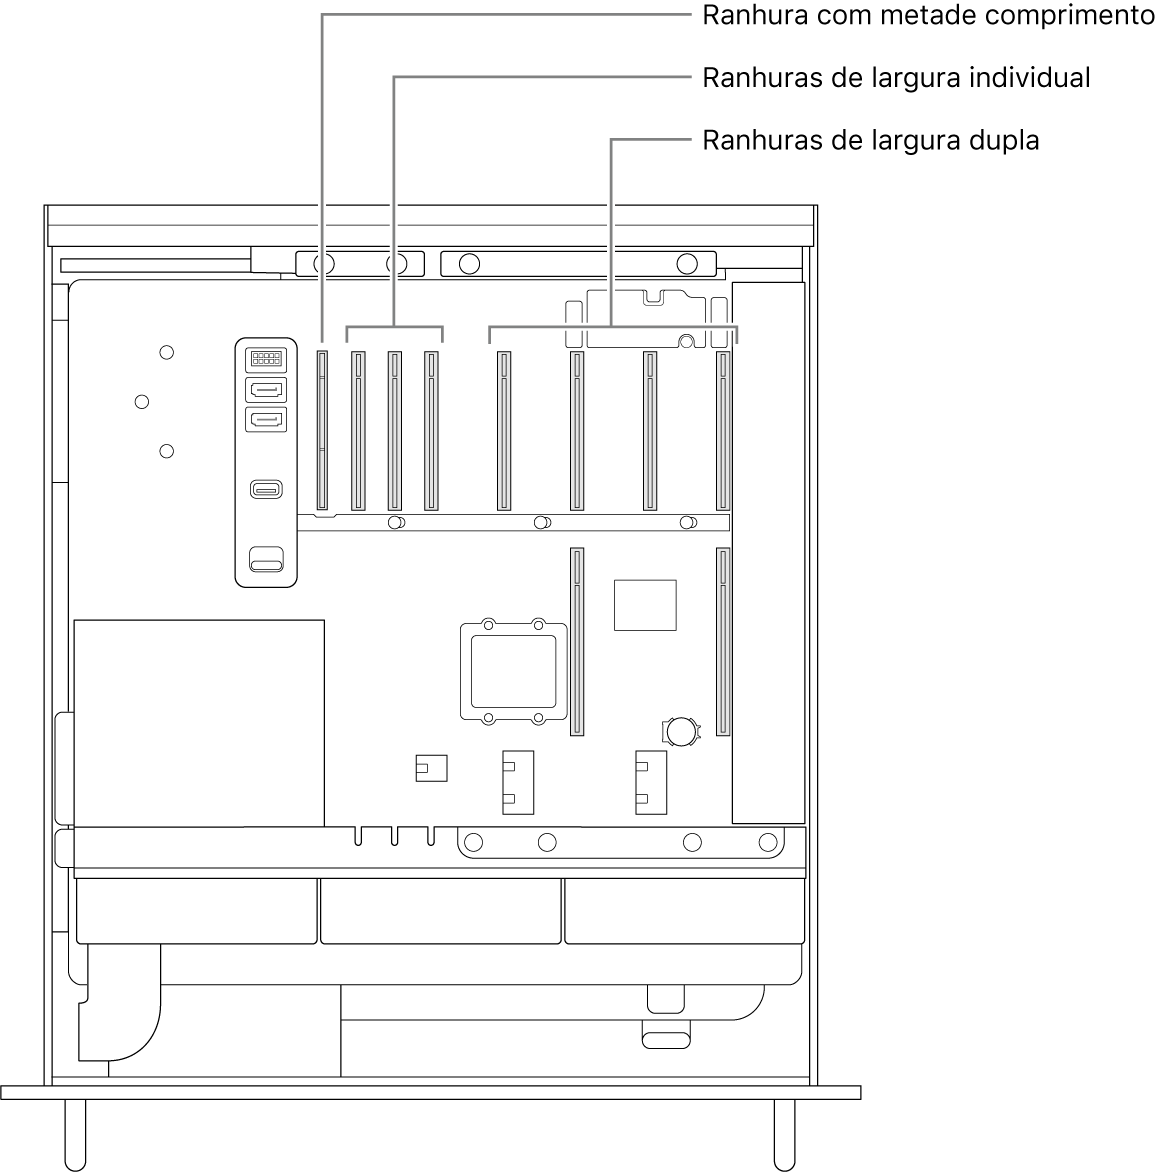 A lateral do Mac Pro aberta com indicações que mostram onde estão localizadas as quatro ranhuras de largura dupla, as três ranhuras de largura individual e a ranhura com metade do comprimento.